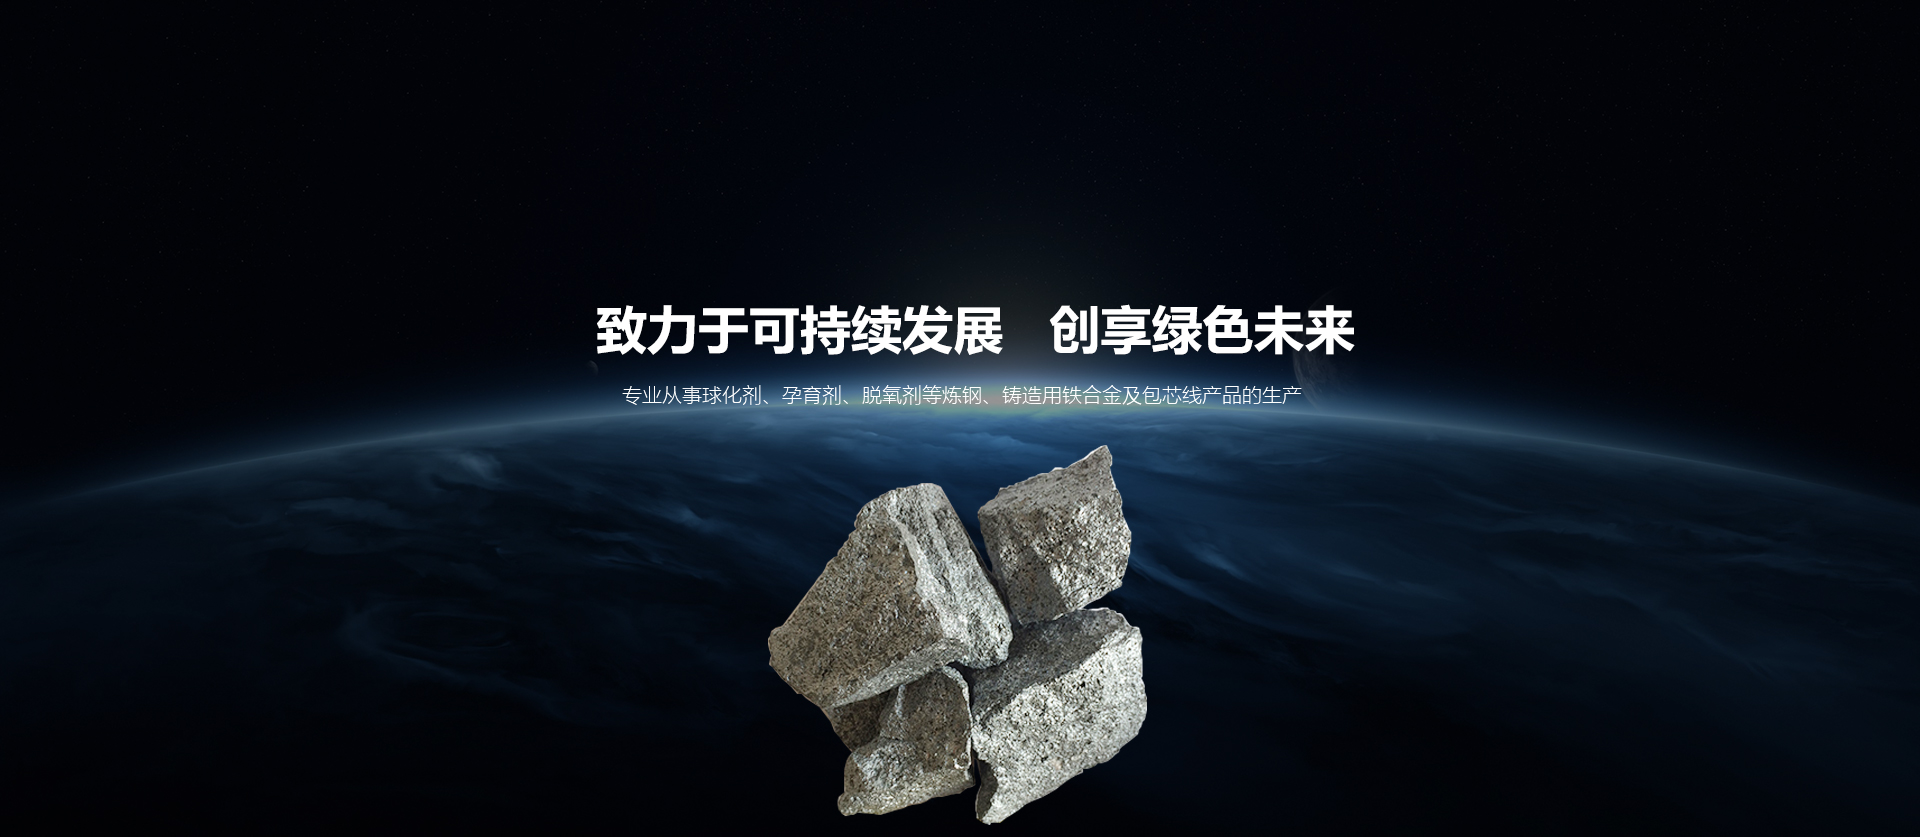 关于当前产品1495新浦京·(中国)官方网站的成功案例等相关图片